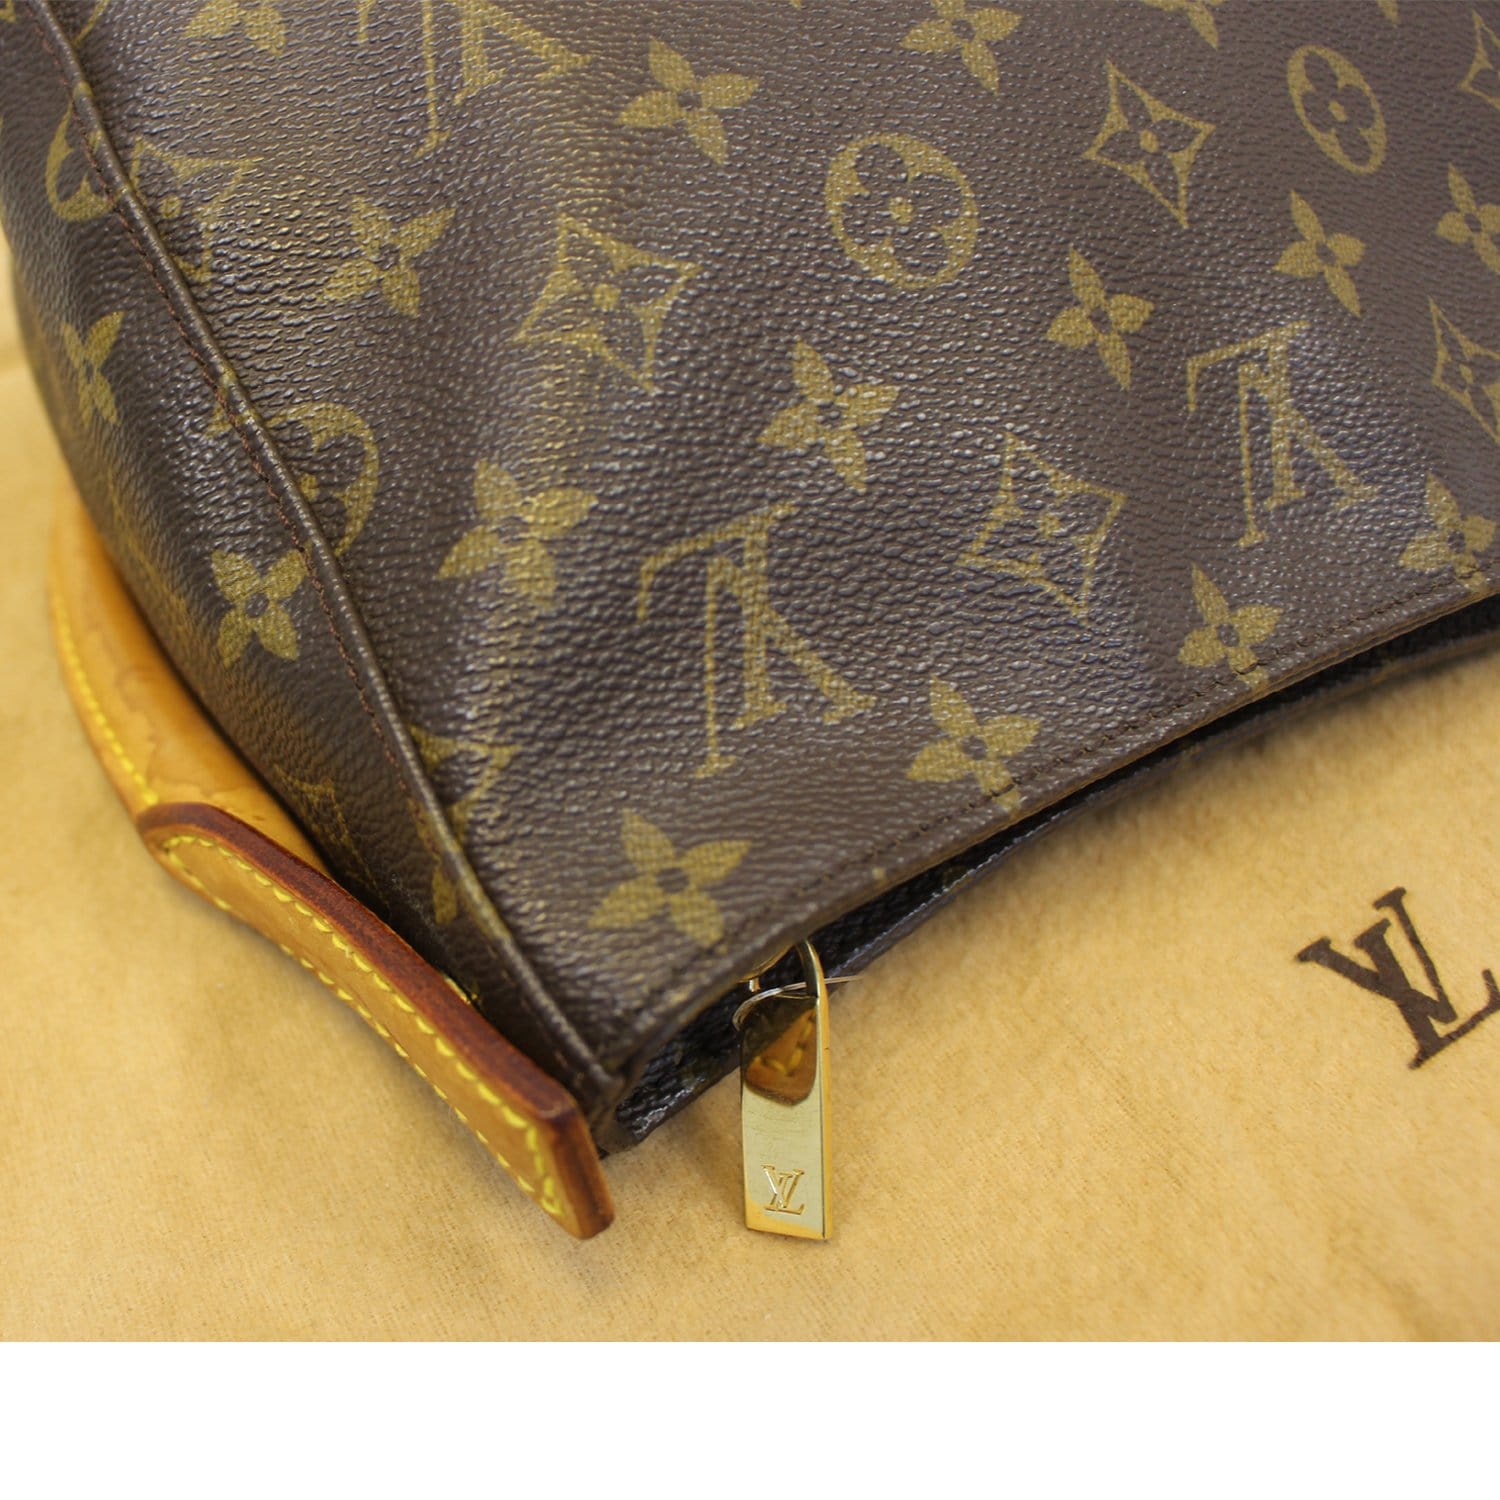 Louis Vuitton J14102 Monogram Canvas Bandouliere Shoulder Strap